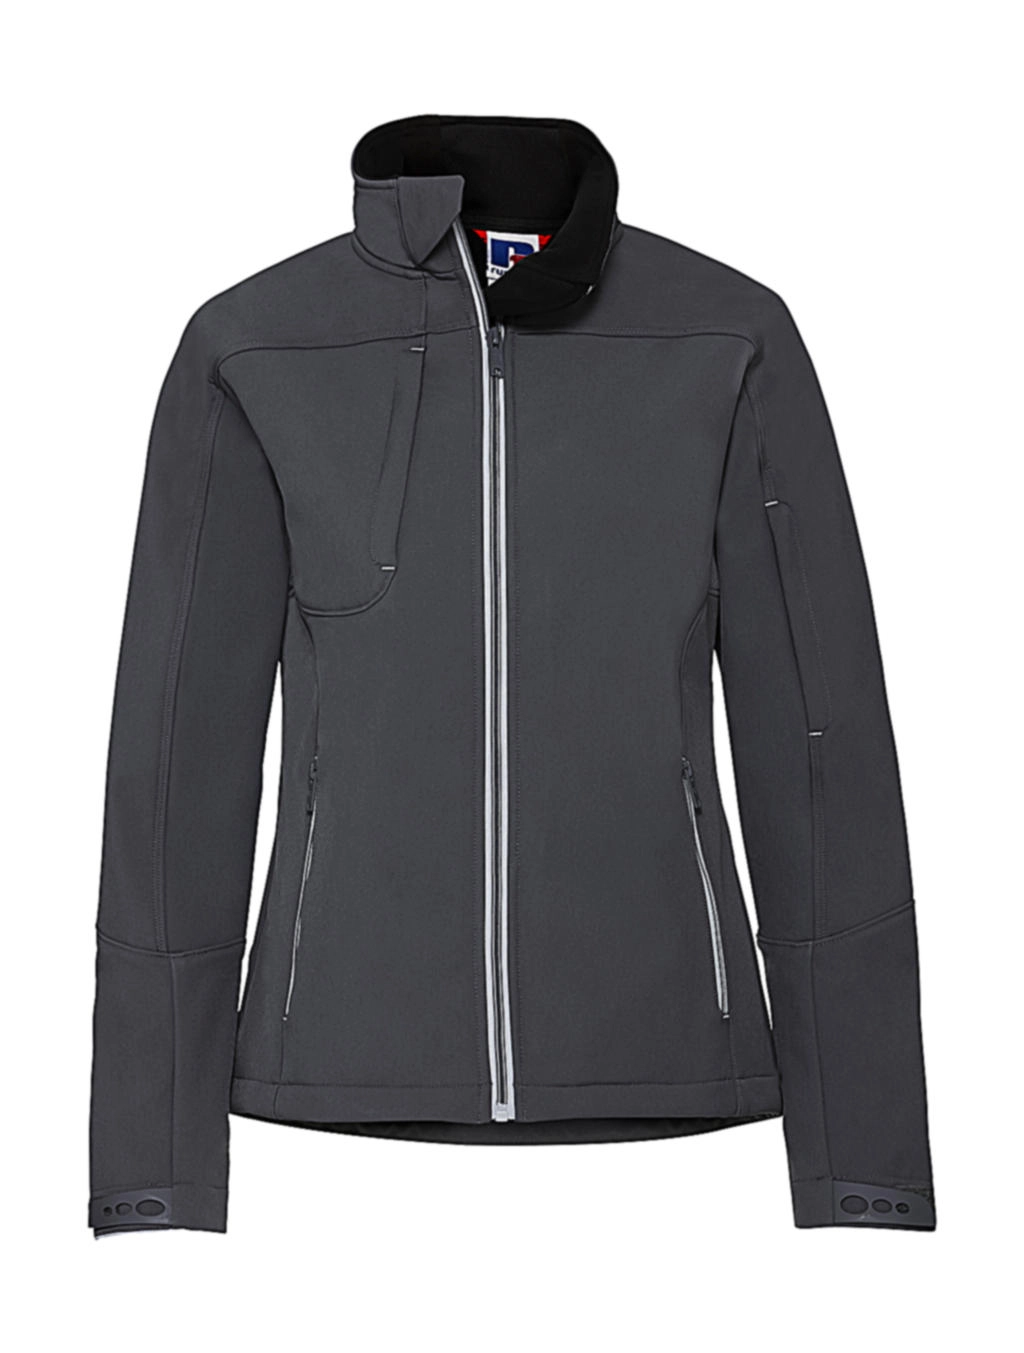 Ladies` Bionic Softshell Jacket zum Besticken und Bedrucken in der Farbe Iron Grey mit Ihren Logo, Schriftzug oder Motiv.